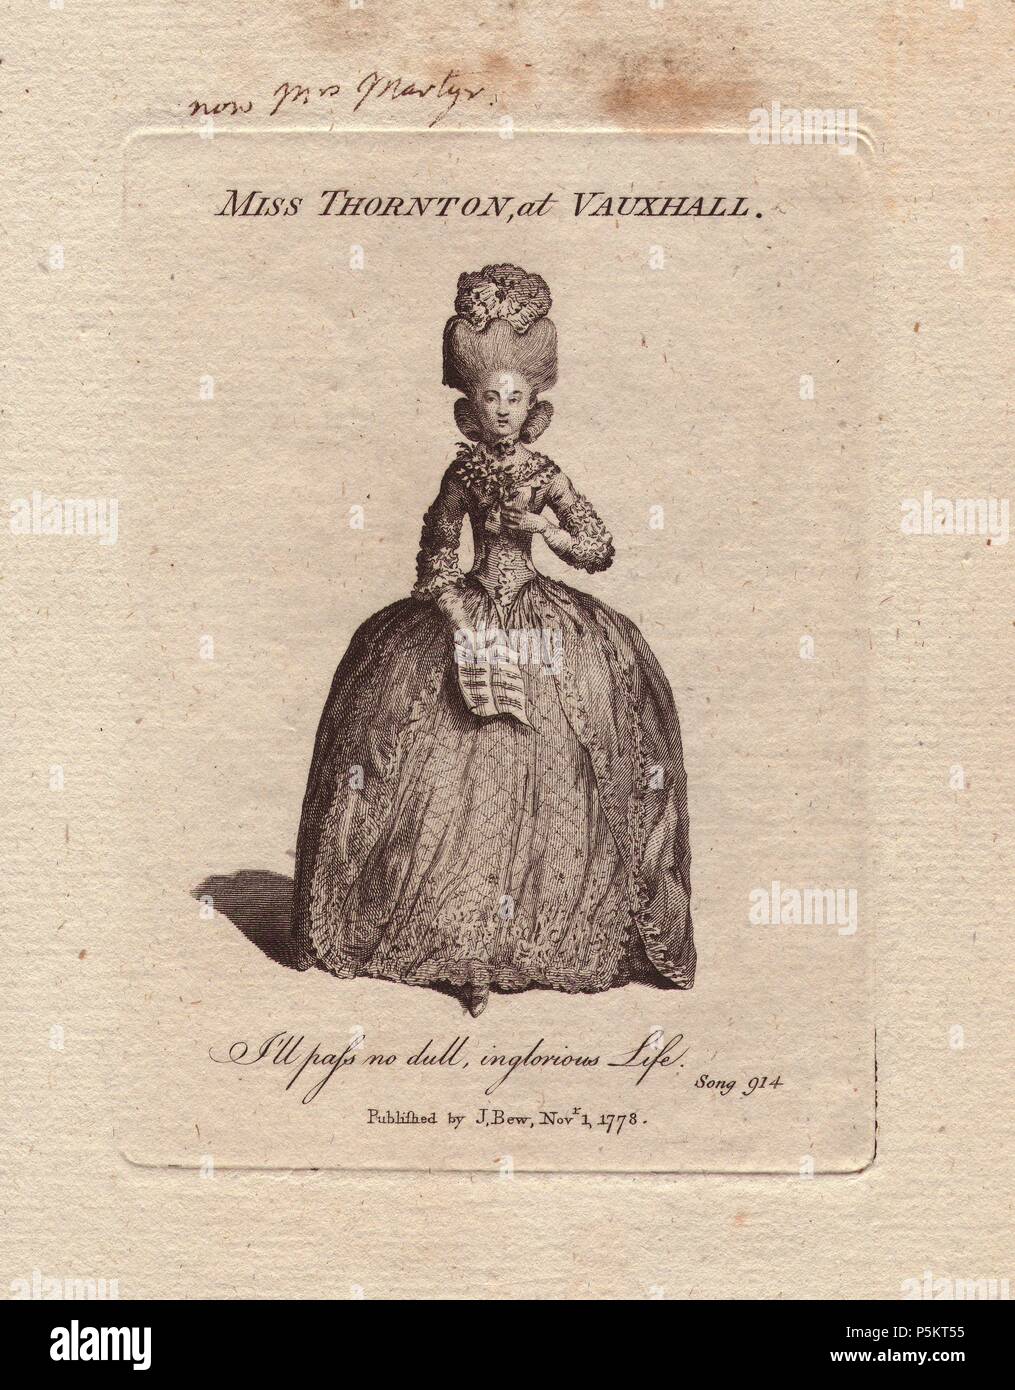 Margaret martire, nee Thornton, alla Vauxhall nel 1788.. . Sotto il suo nome da nubile Miss Thornton ha fatto il suo debutto in palcoscenico di musica alla Vauxhall Gardens, uno dei non Londo più popolari luoghi di intrattenimento, prima di passare al giardino di Covent in 1779. Lei è stato un famoso attore comico in opere liriche, pantomime, entr'actes per 25 anni. Morì nel 1807. . Unsigned incisione su rame da "Vocal Magazine' pubblicato da J. Bew 1778. Foto Stock